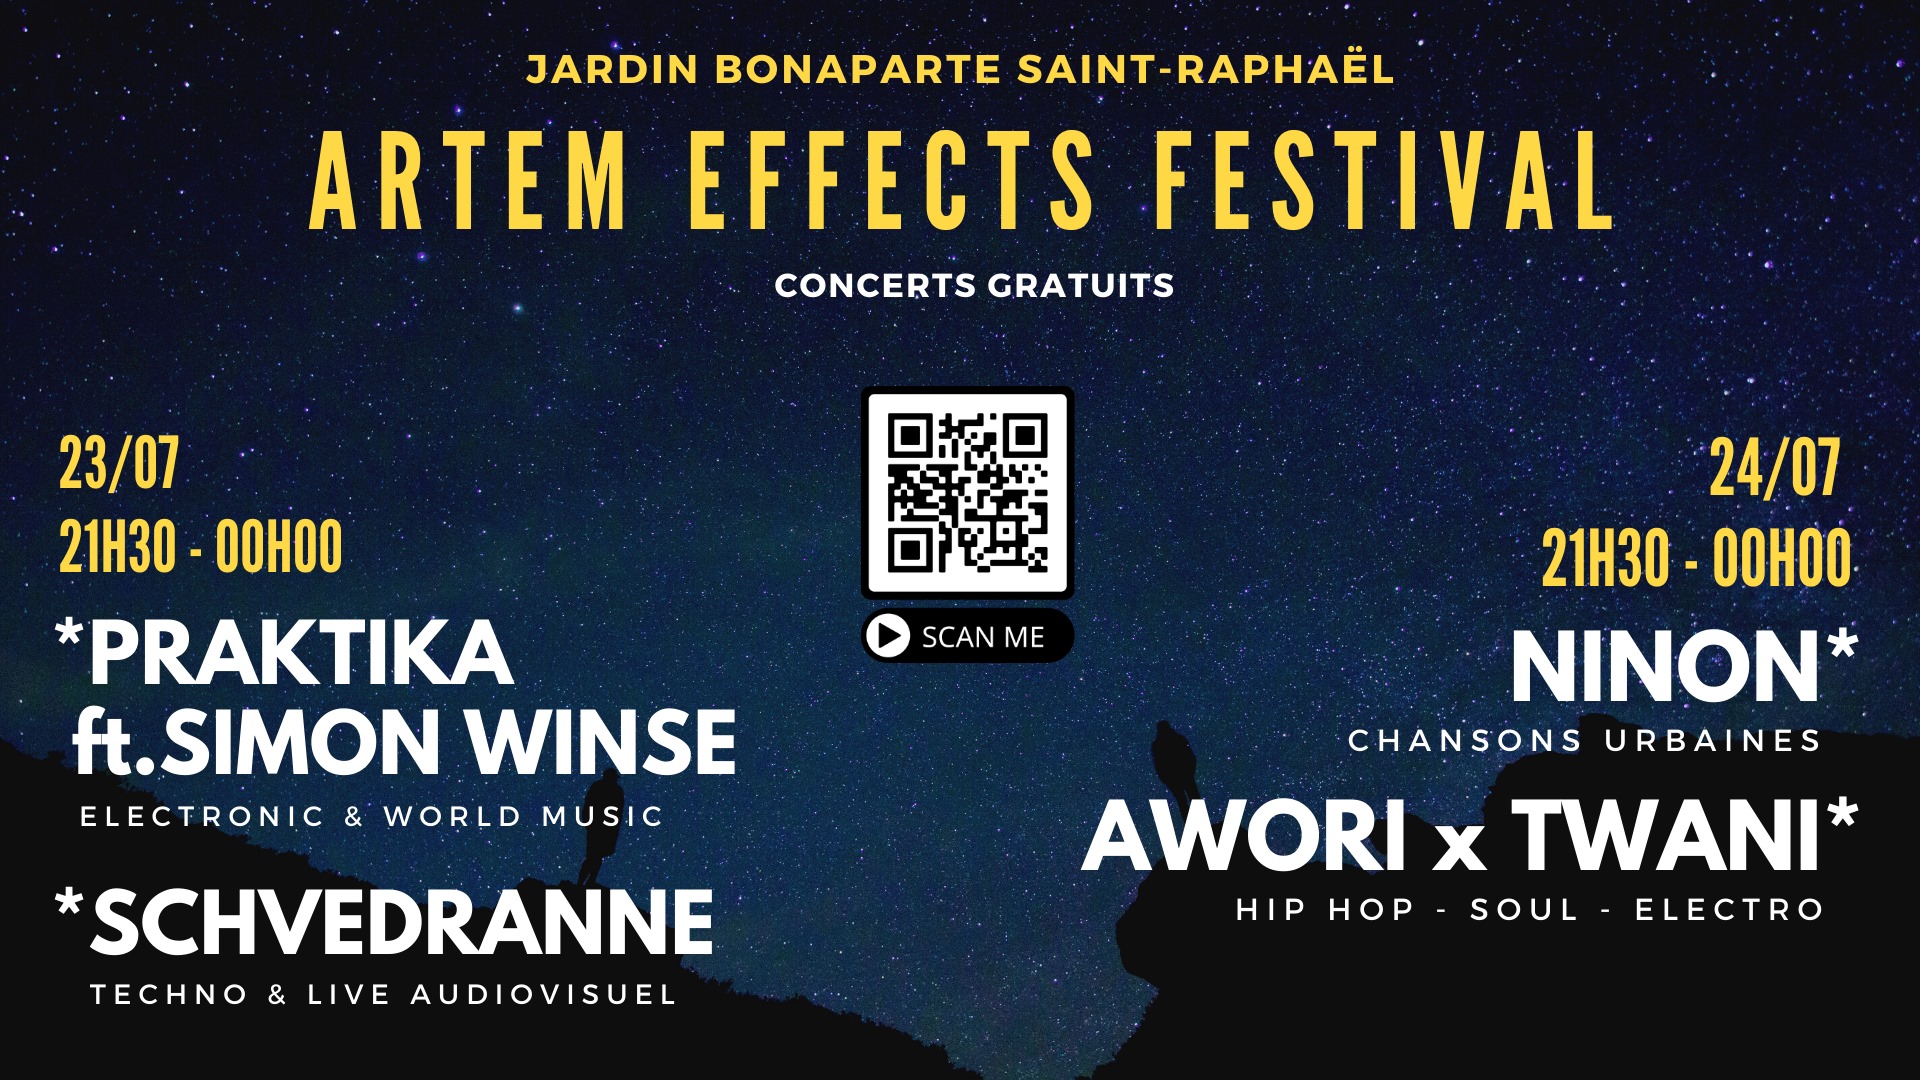 Artem Effects, Festival, Awori, Twani, Schvédranne, Praktika, Simon Winse, Ninon, Saint Raphaël